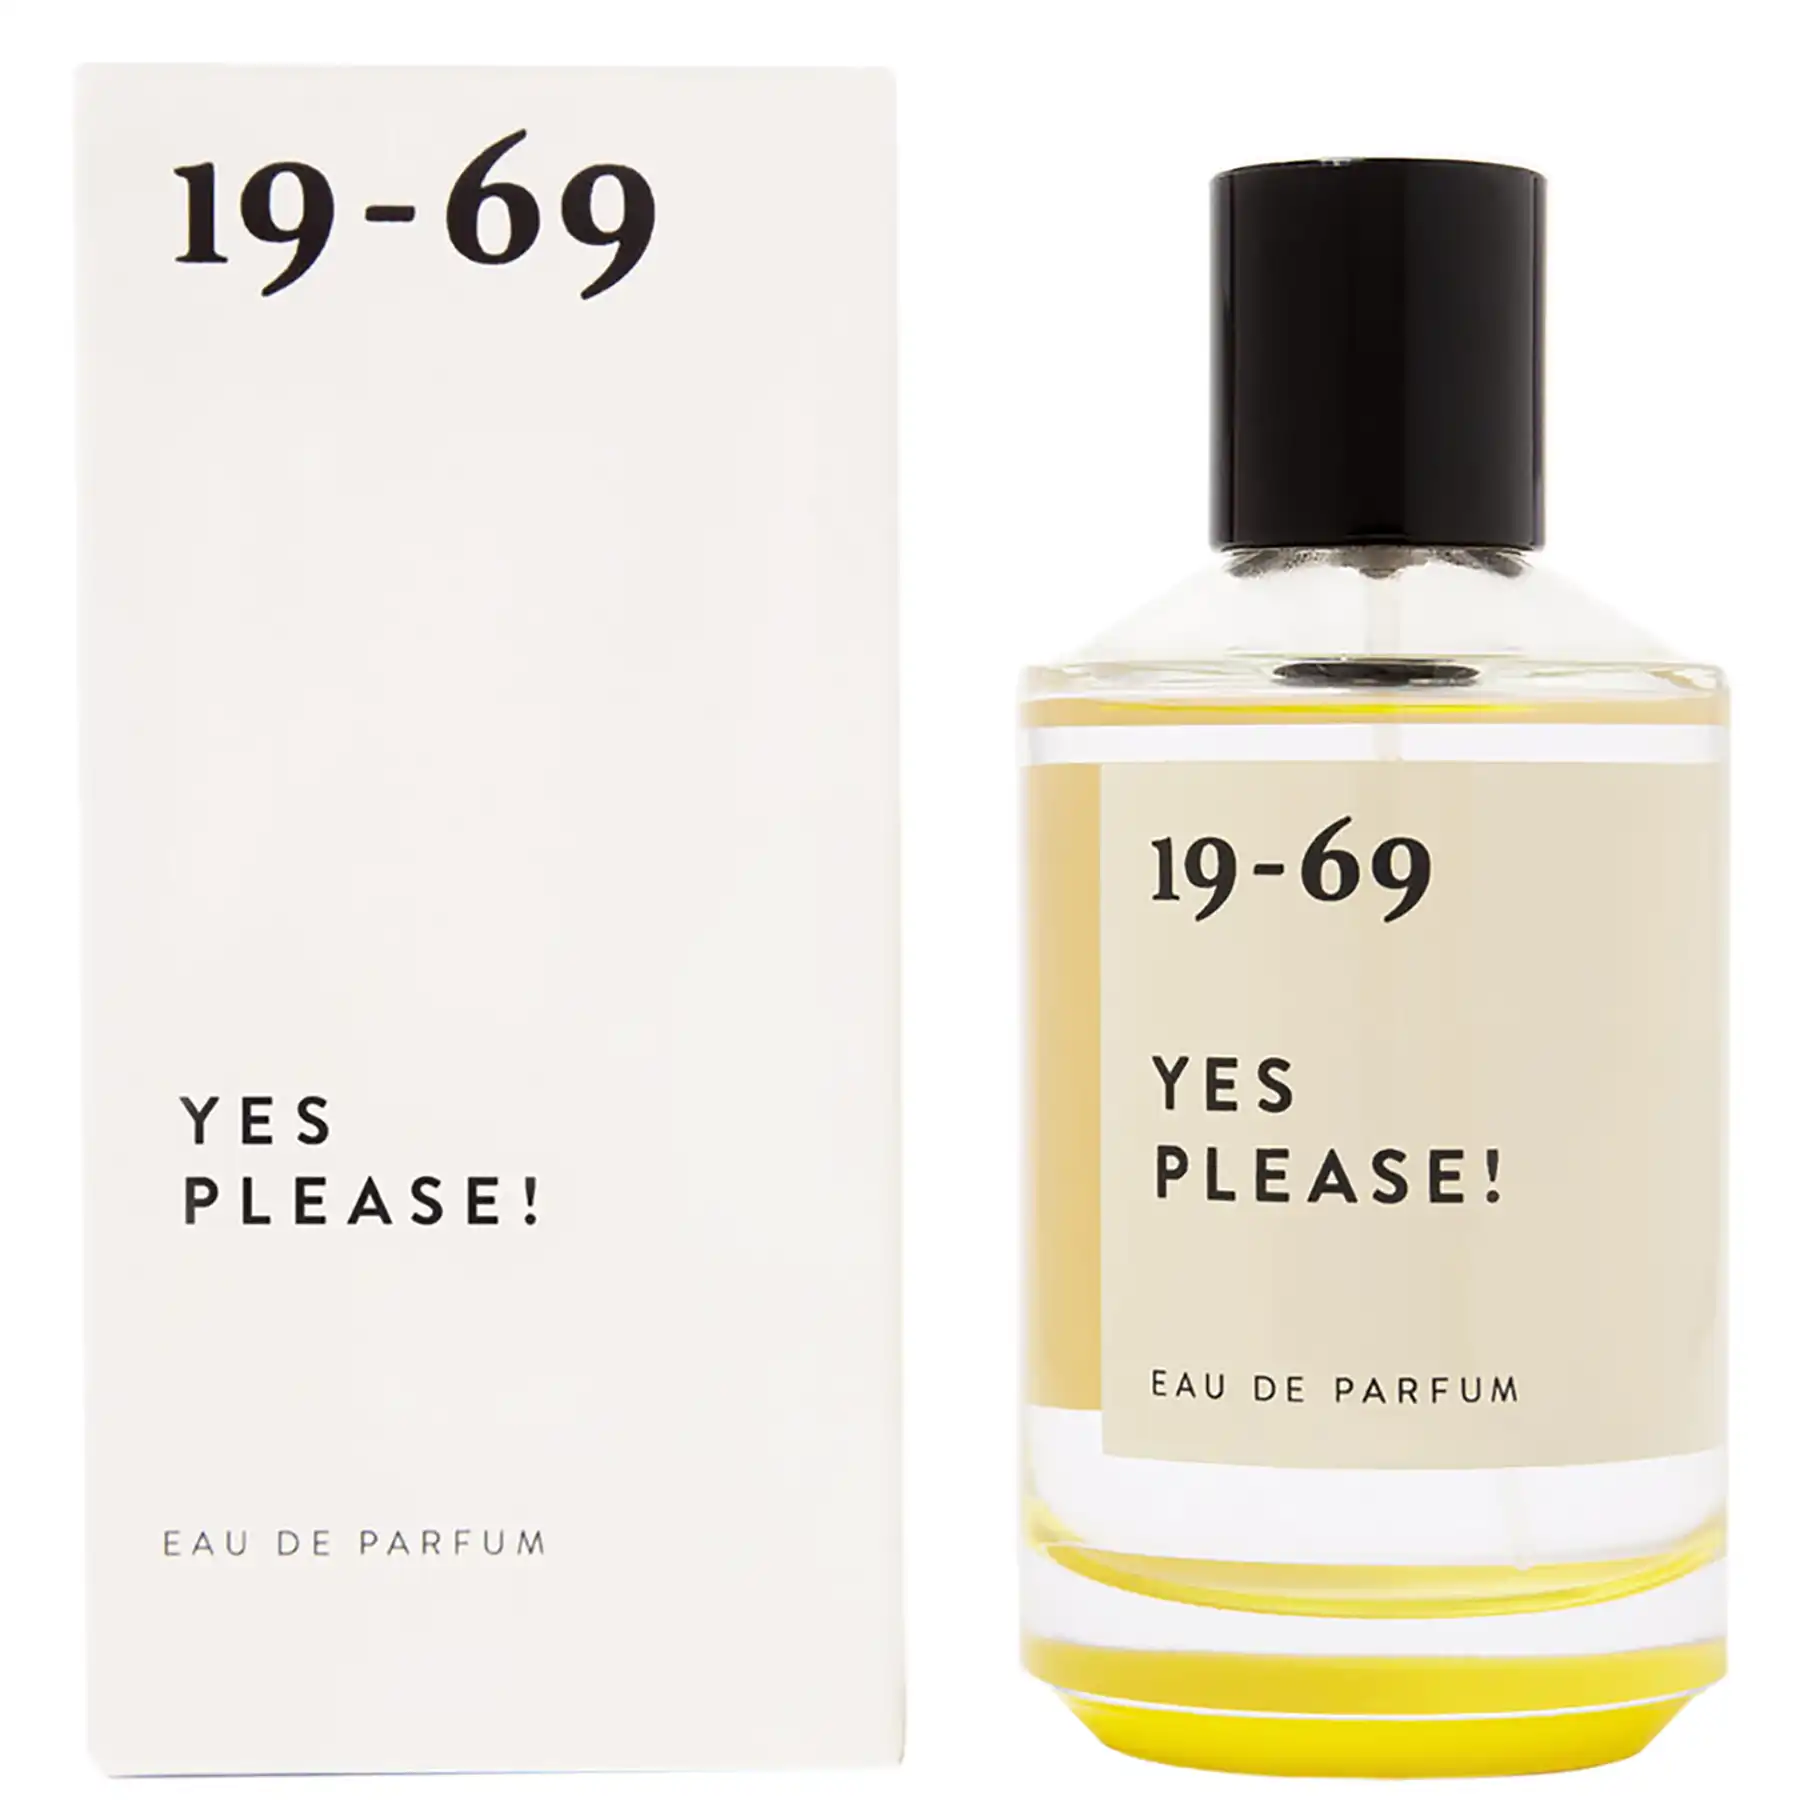 1969 Yes Please! Eau de Parfum